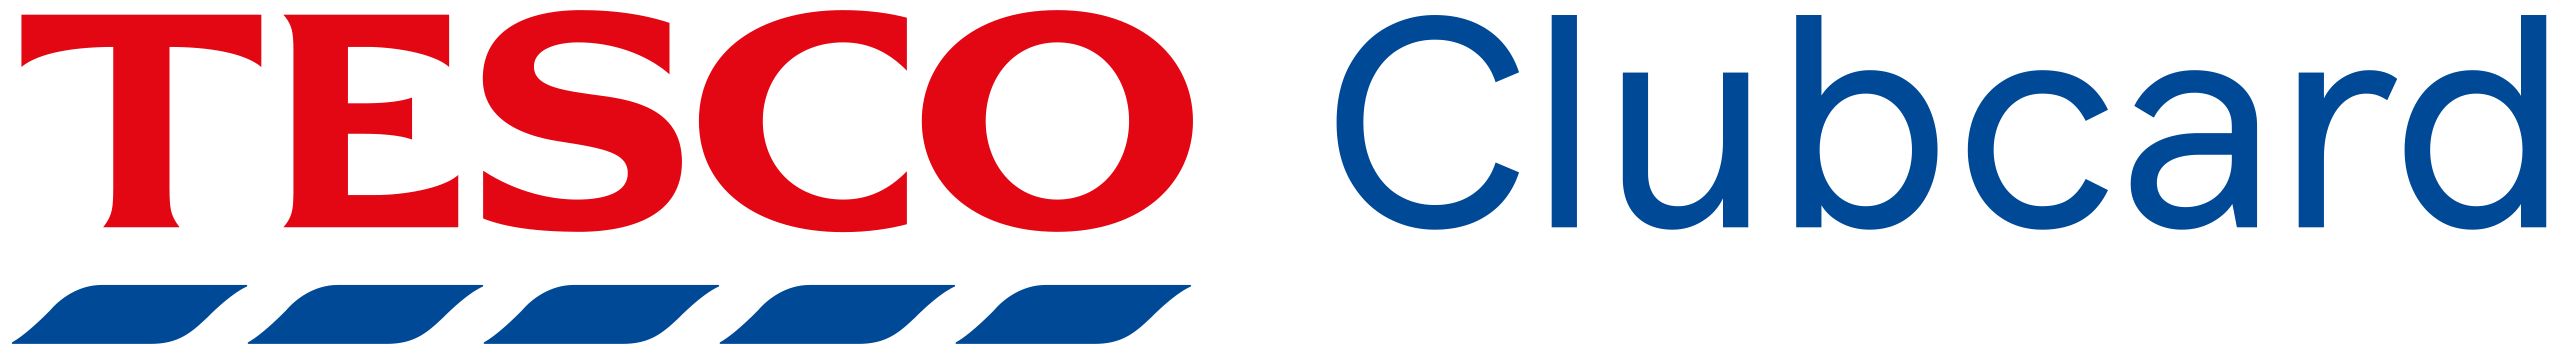 Tesco Clubcard logo